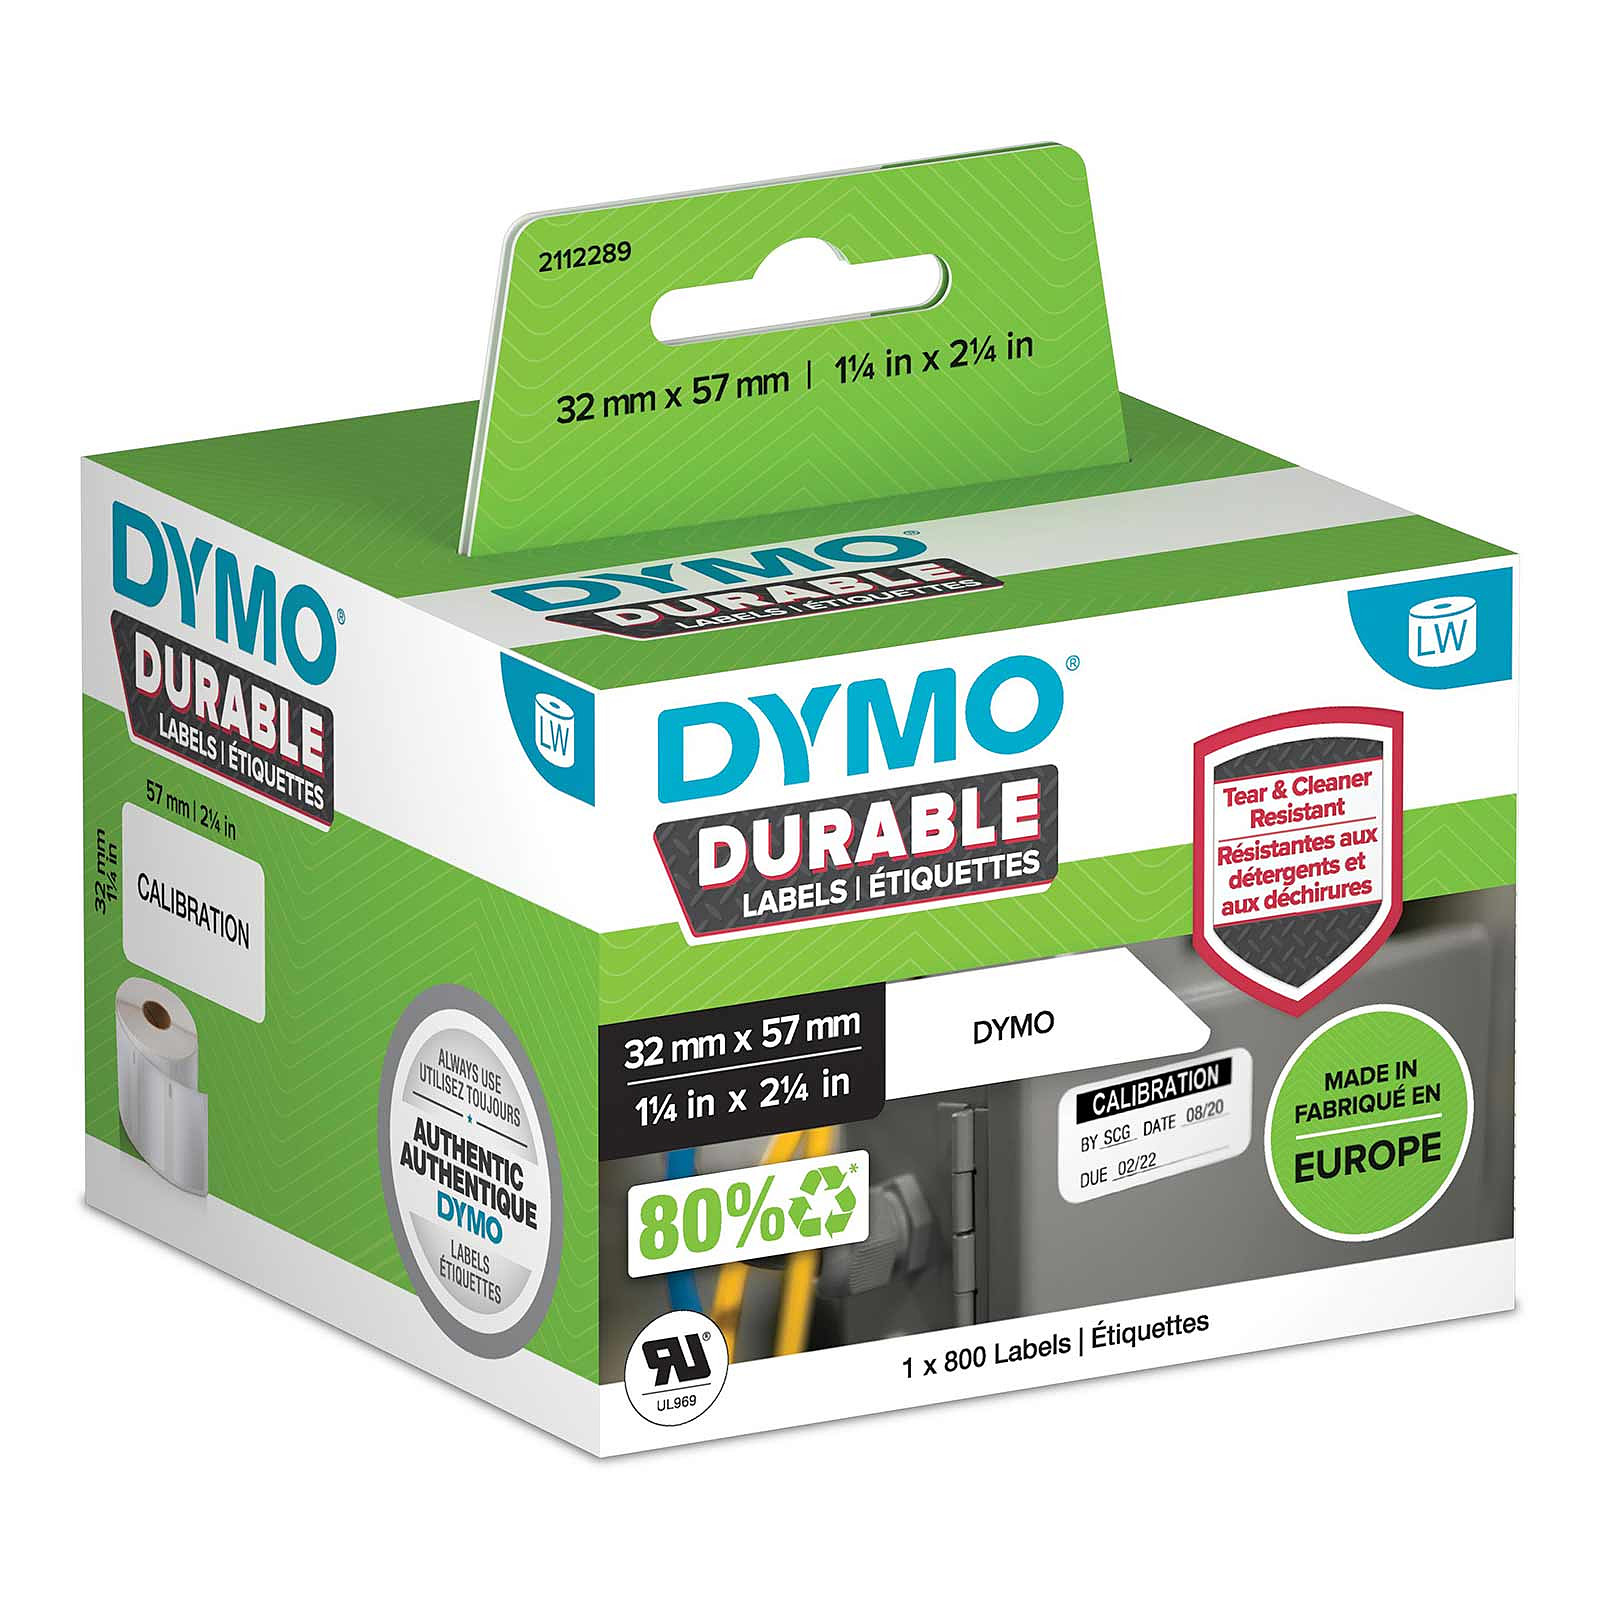 DYMO LW Rouleau d'etiquettes universelles permanentes blanches - 57 x 32 mm - Papier imprimante DYMO